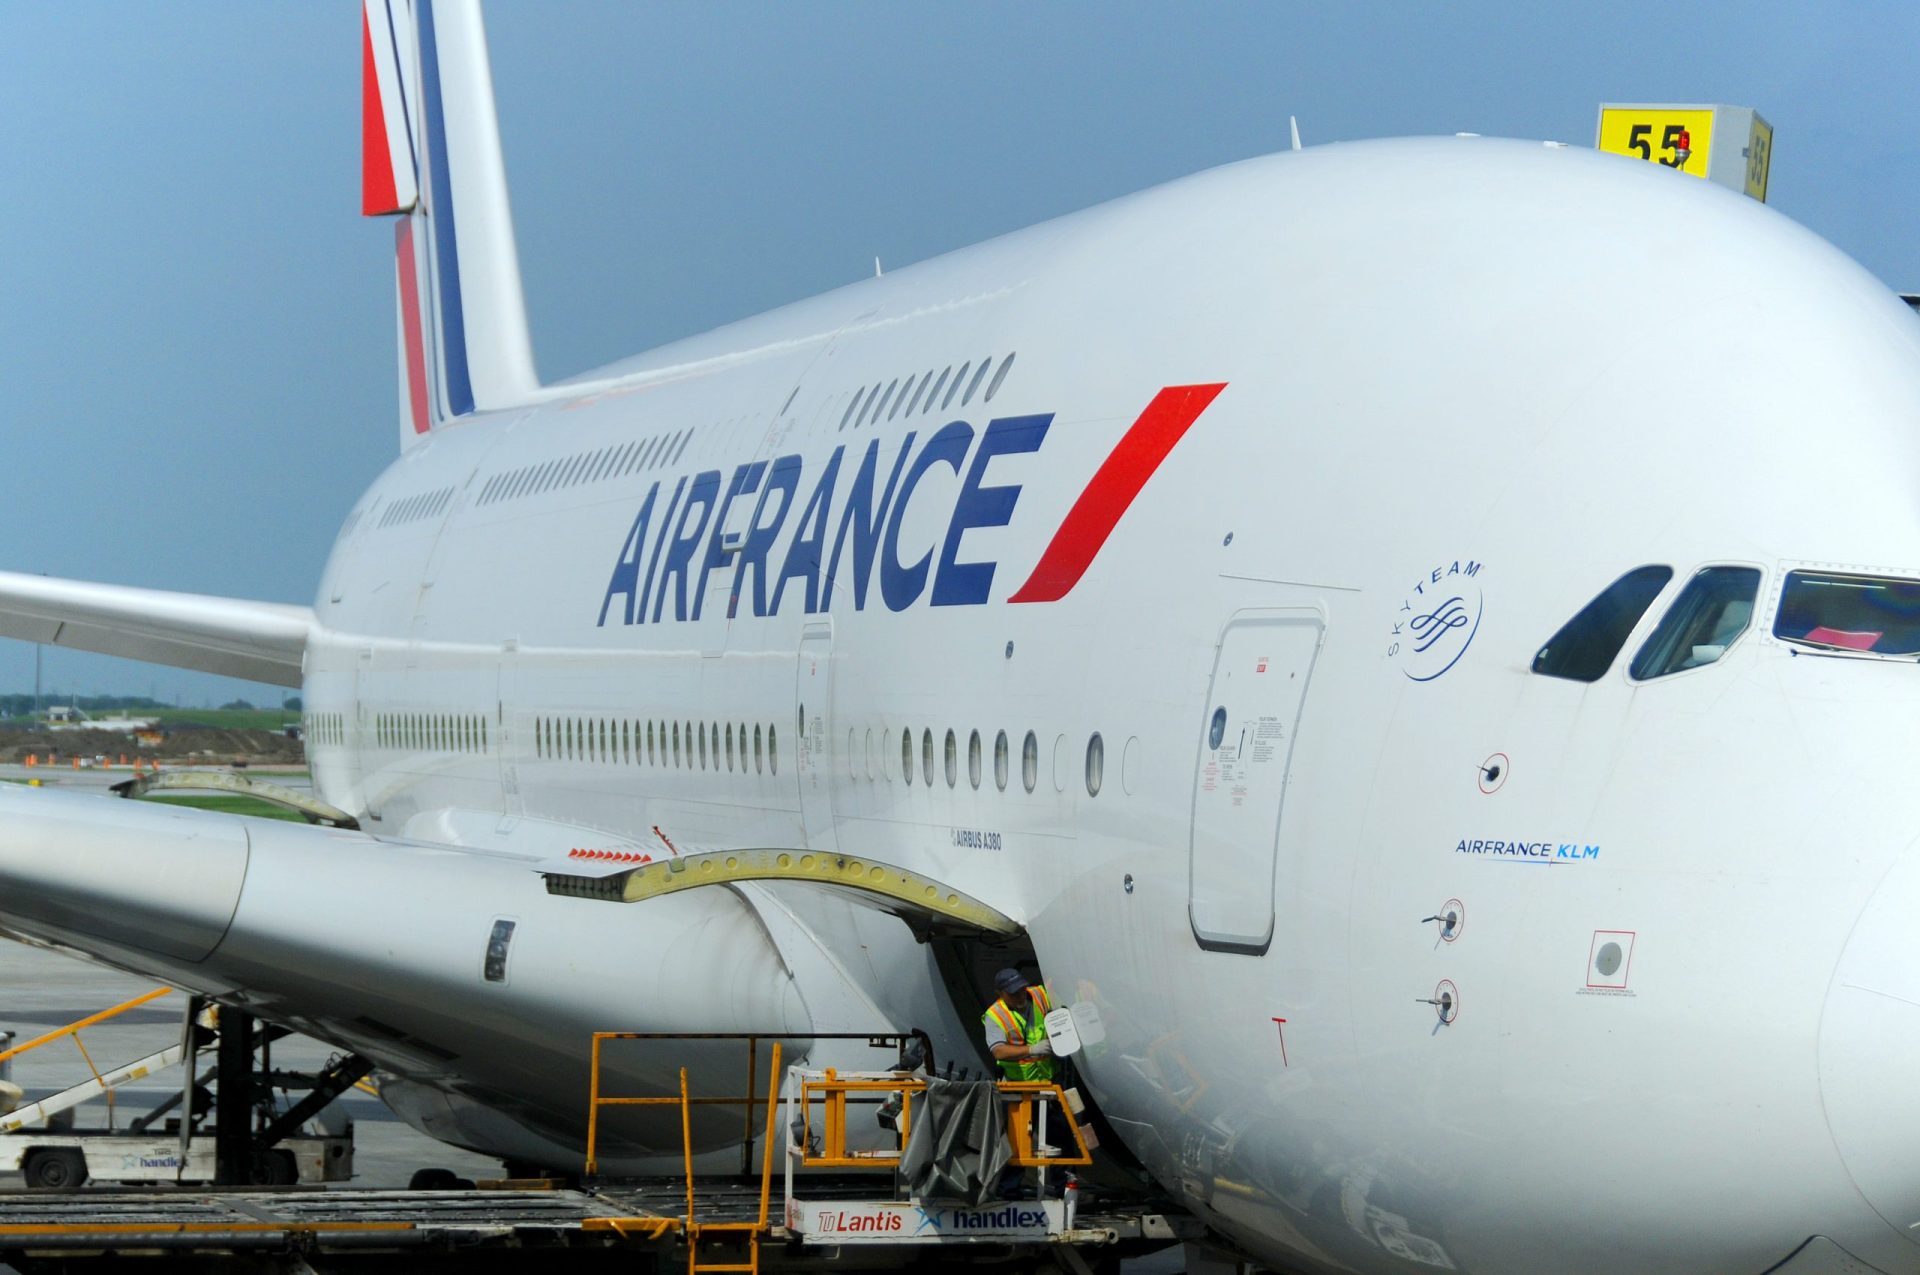 Hospedeiras da Air France terão de usar véu